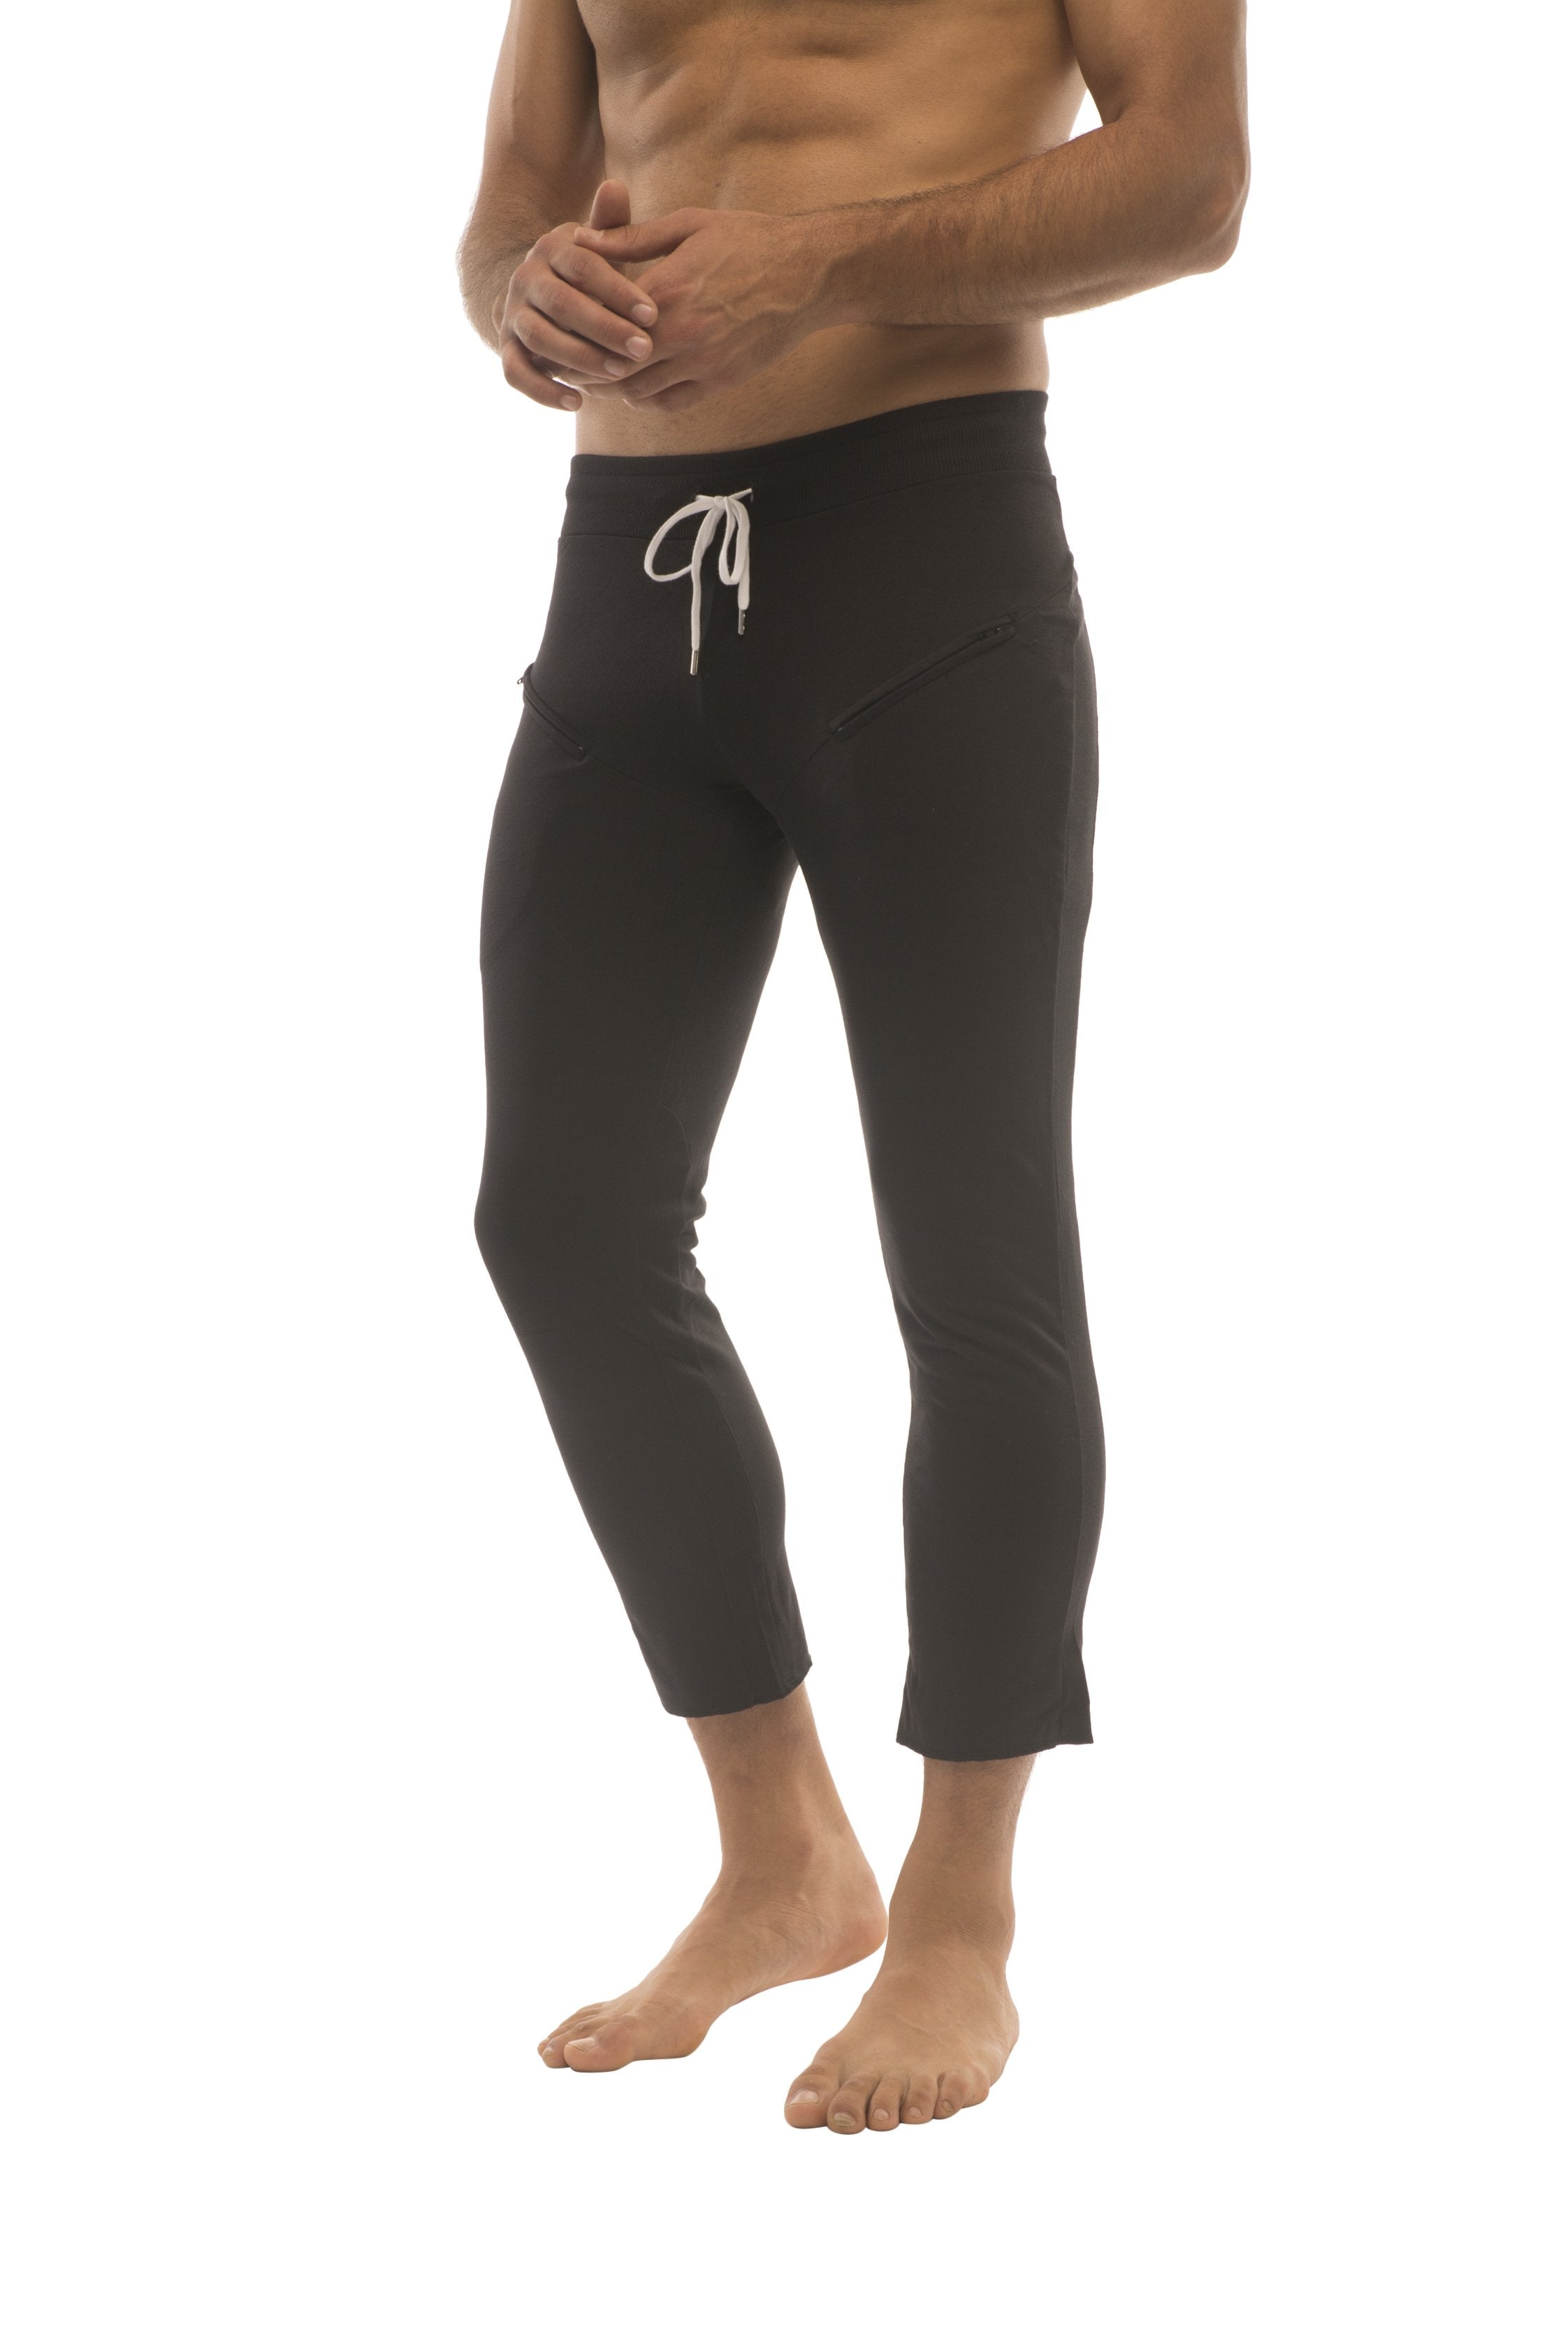 Mens 4/5 Zipper Pocket Capri Yoga Pants (Solid Black)